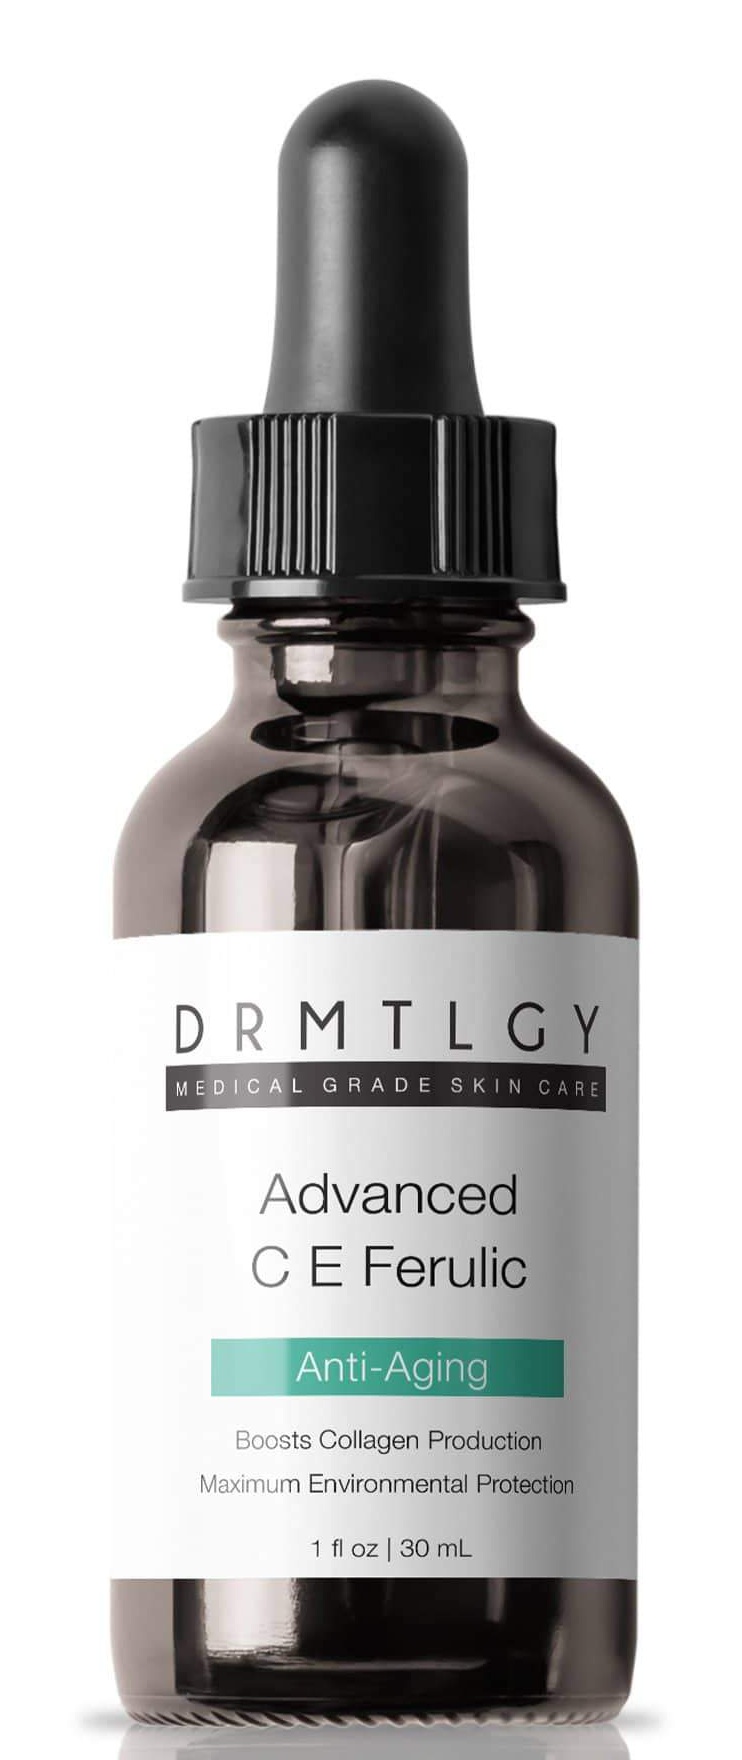 DRMTLGY Advanced C E Ferulic Anti-aging